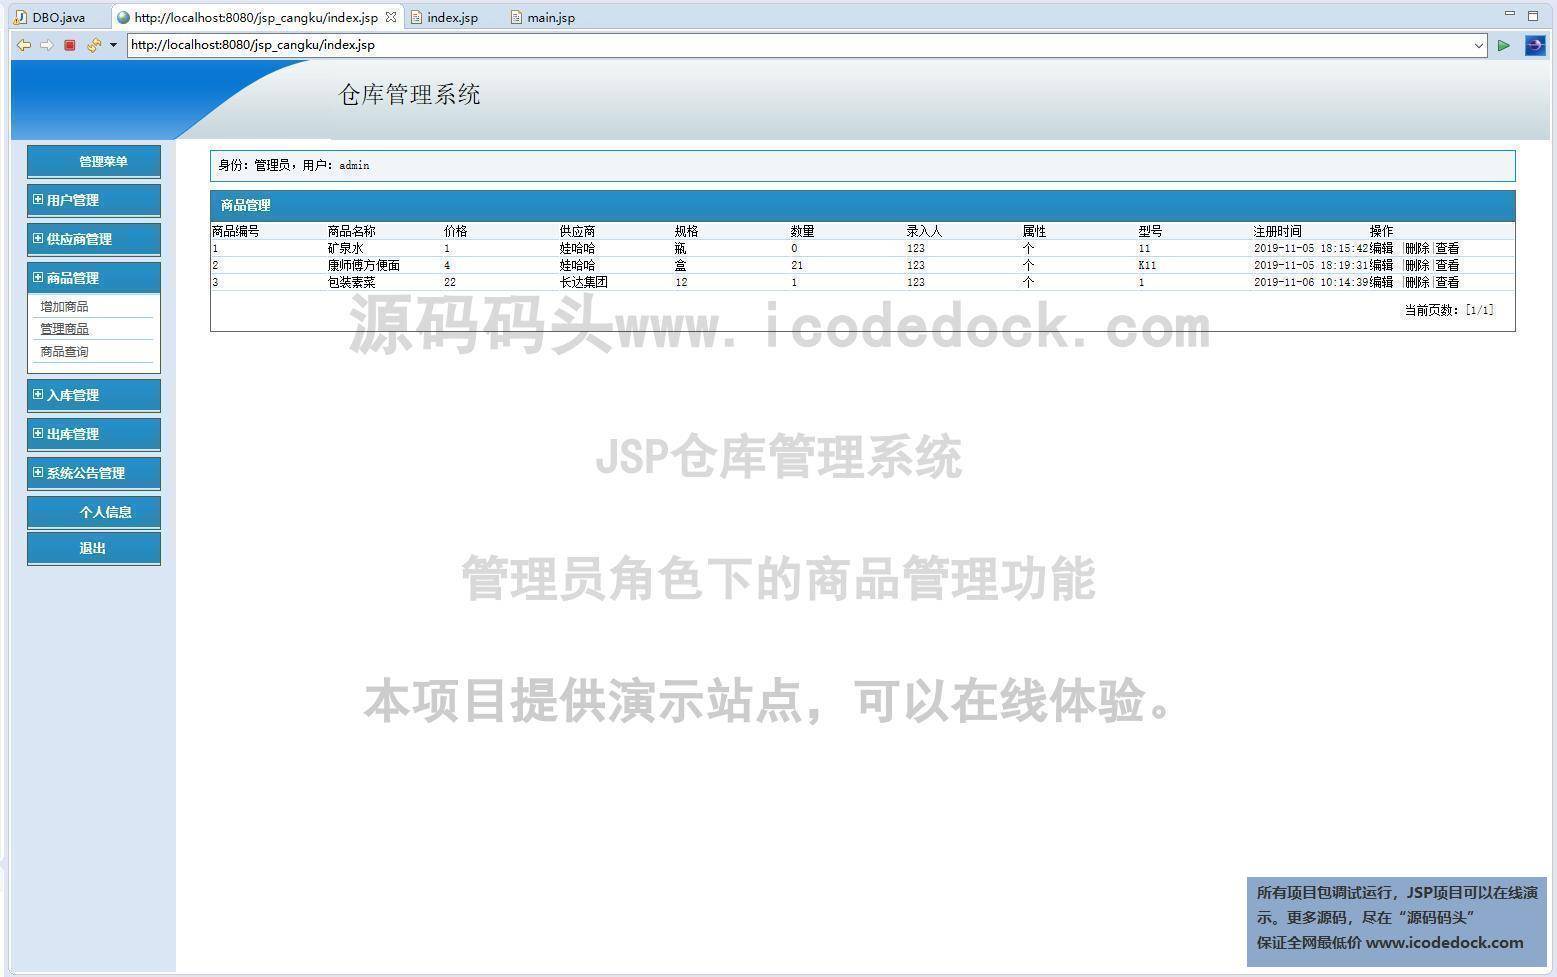 源码码头-JSP仓库管理系统-管理员角色-商品管理